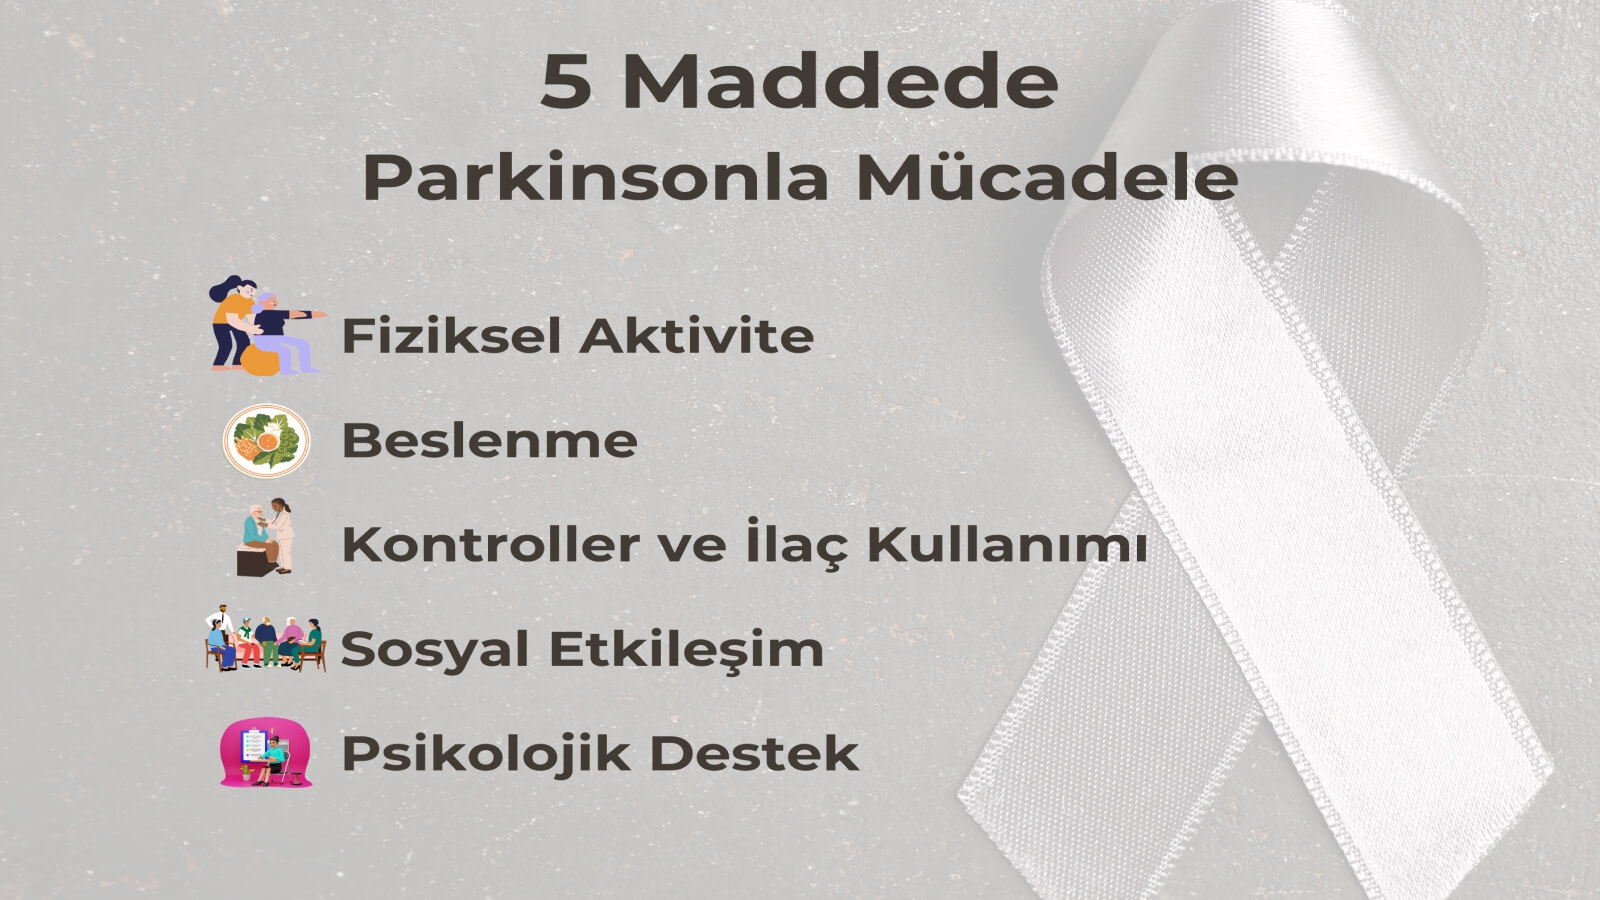 5 Maddede Parkinson